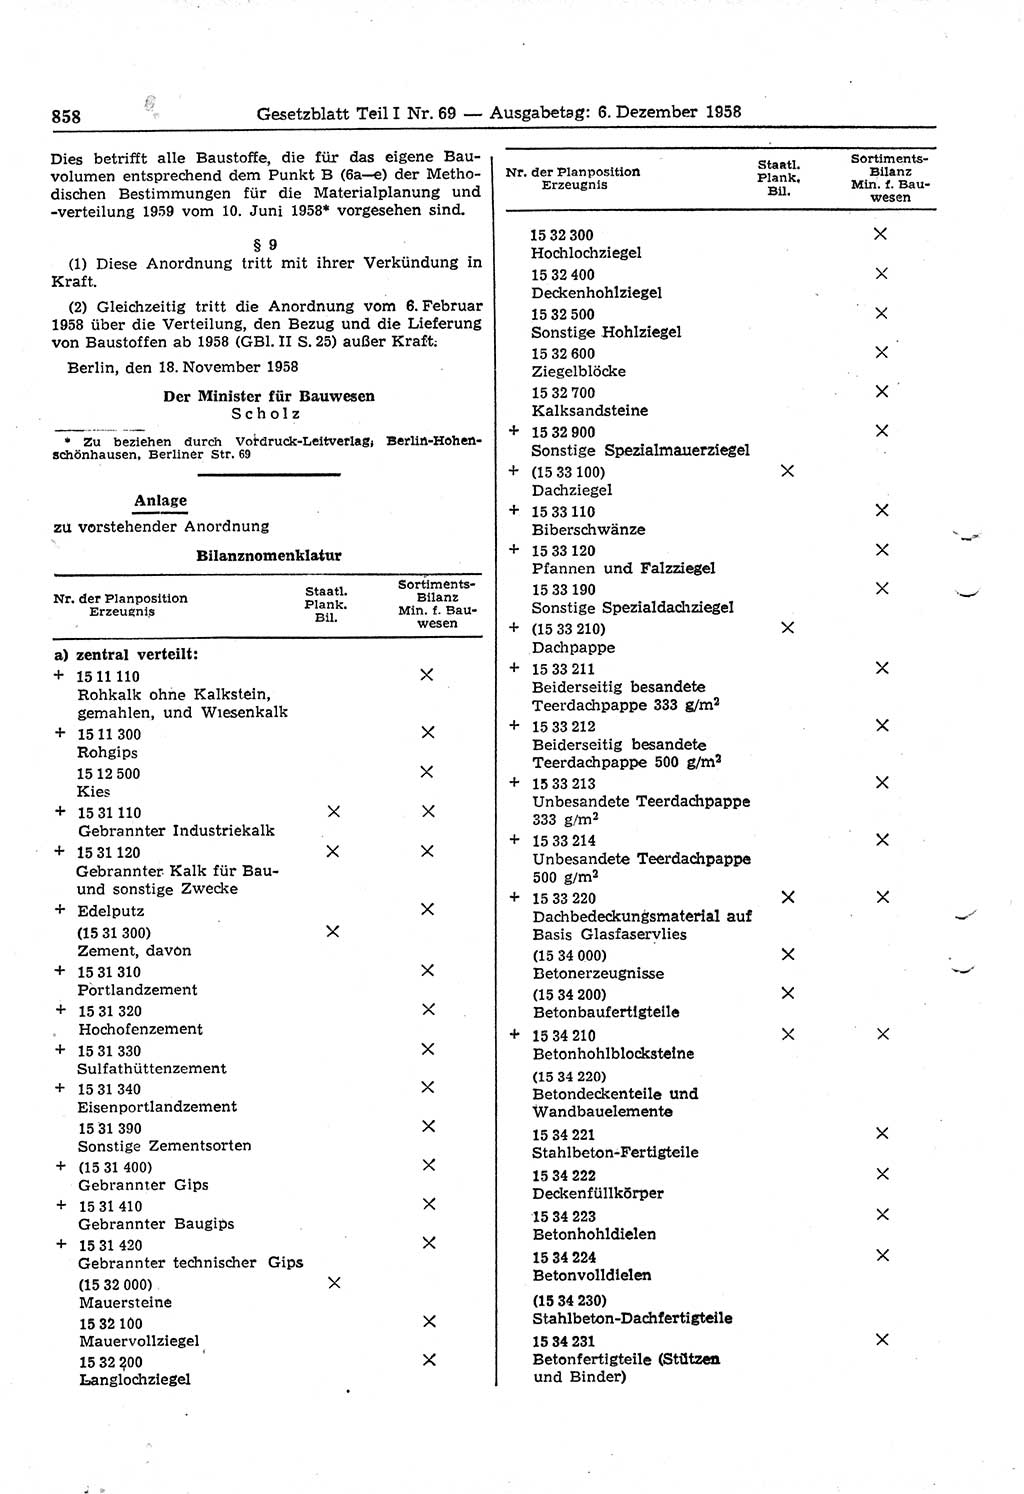 Gesetzblatt (GBl.) der Deutschen Demokratischen Republik (DDR) Teil Ⅰ 1958, Seite 858 (GBl. DDR Ⅰ 1958, S. 858)